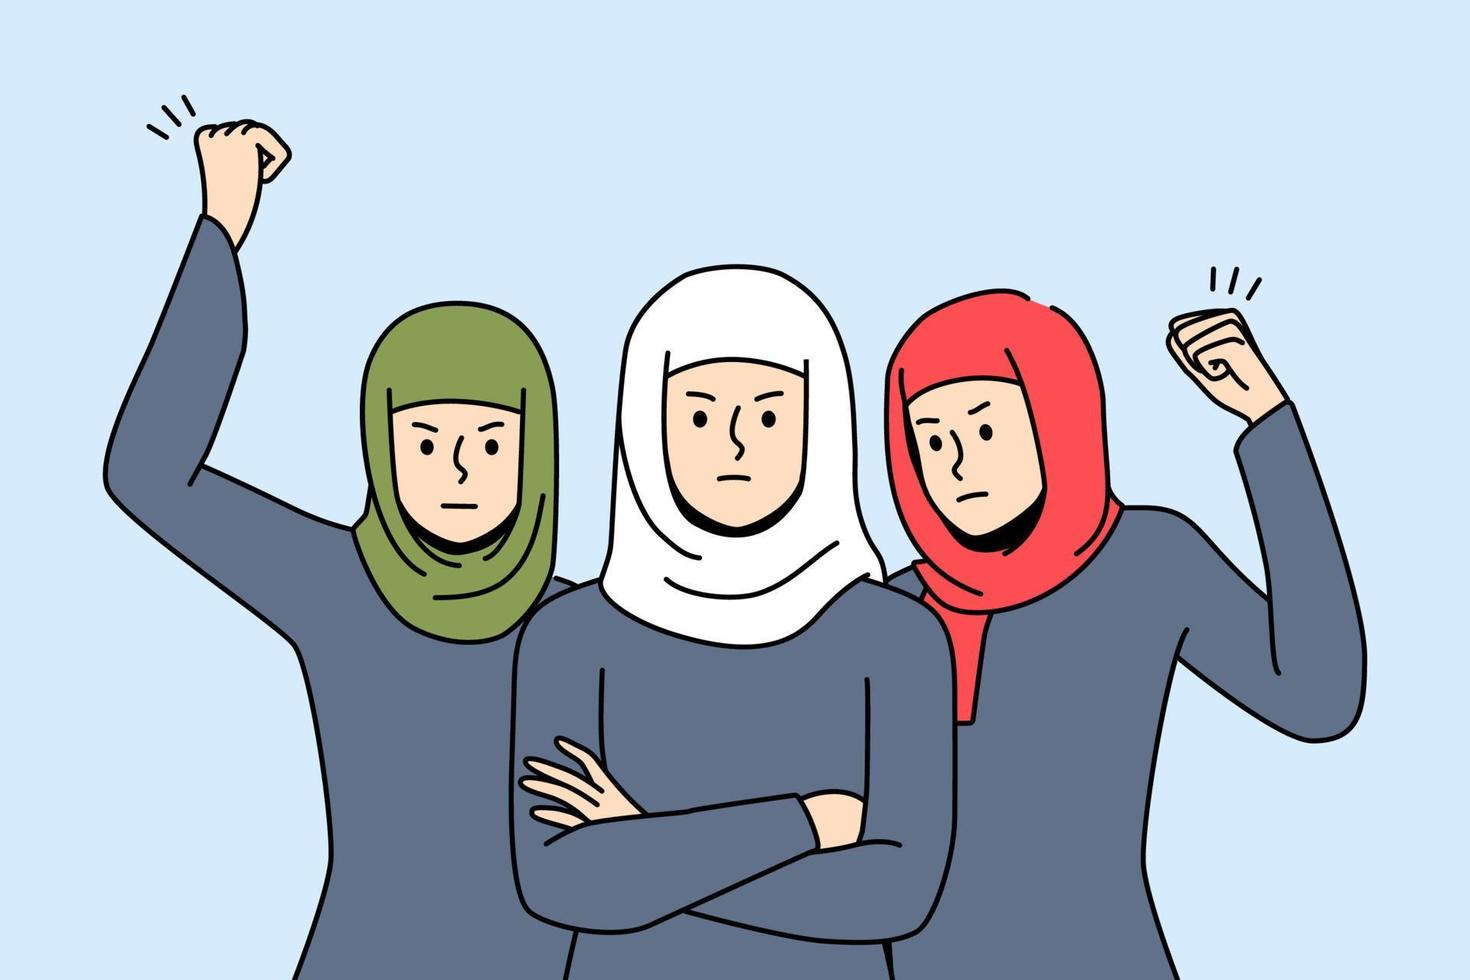 decisivo donne nel hijab In piedi insieme per uguaglianza e diritti. arrabbiato Arabo femmine protesta su strada. dimostrazione concetto. vettore illustrazione.